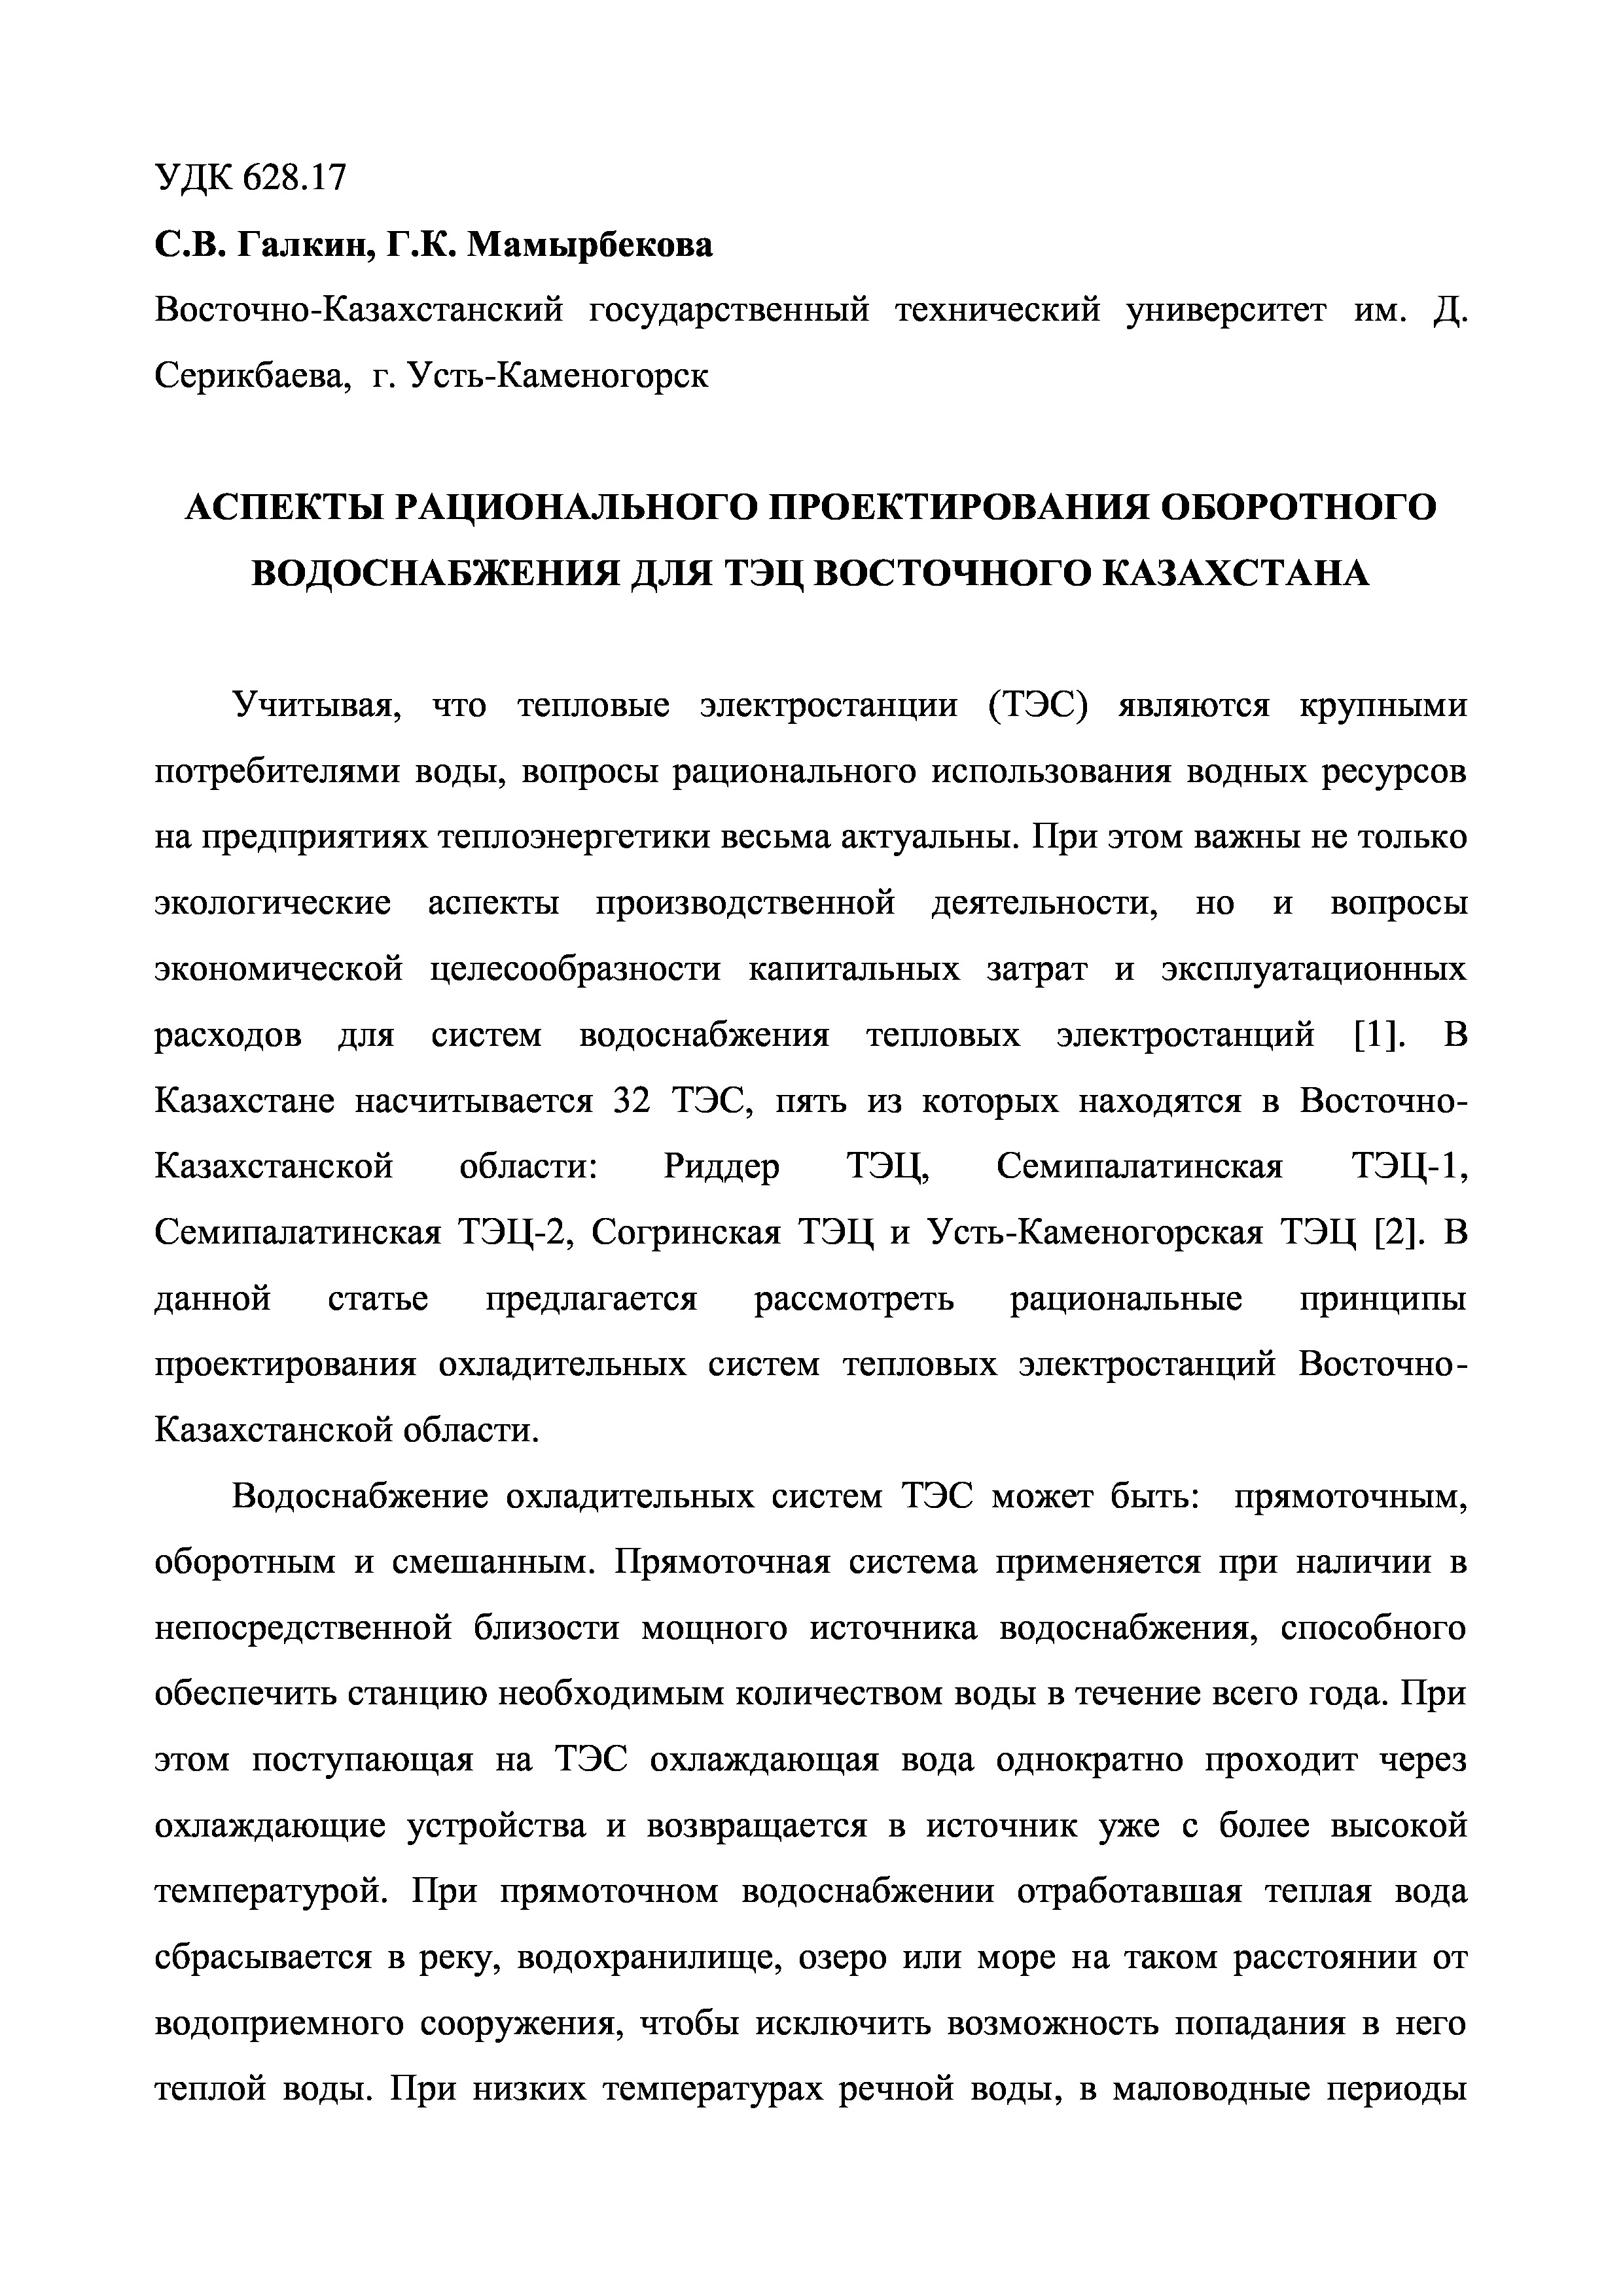 Аспекты рационального проектирования оборотного водоснабжения для ТЭЦ Восточного Казахстана | С.Галкин, Г.Мамырбекова